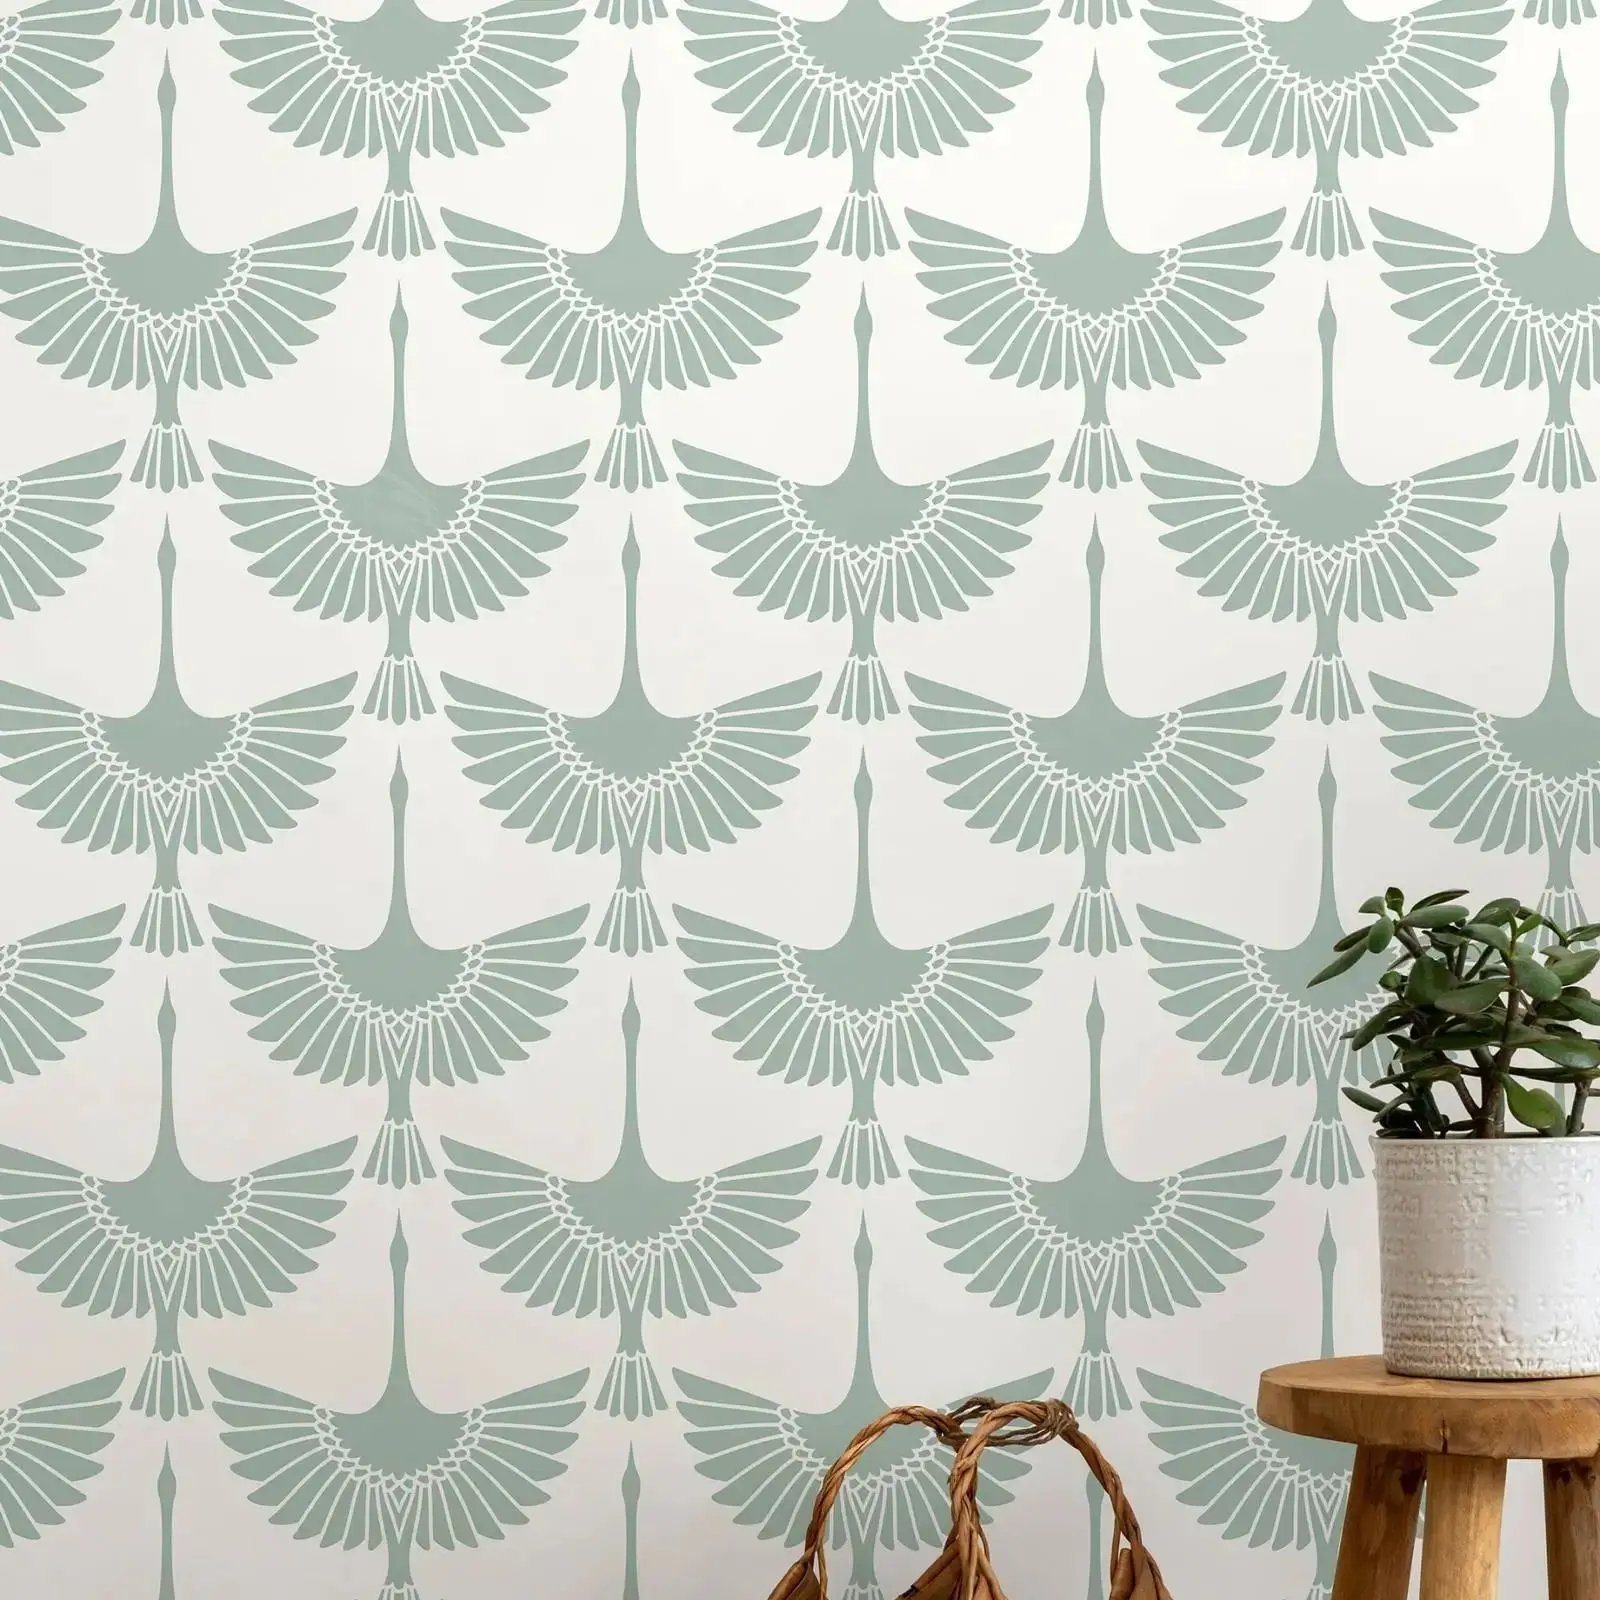 

Mint Swan Birds Wallpaper, Peel and Stick Wallpaper Removable Wallpaper Home Decor Wall Art Wall Decor ,Wallpaper Sticker